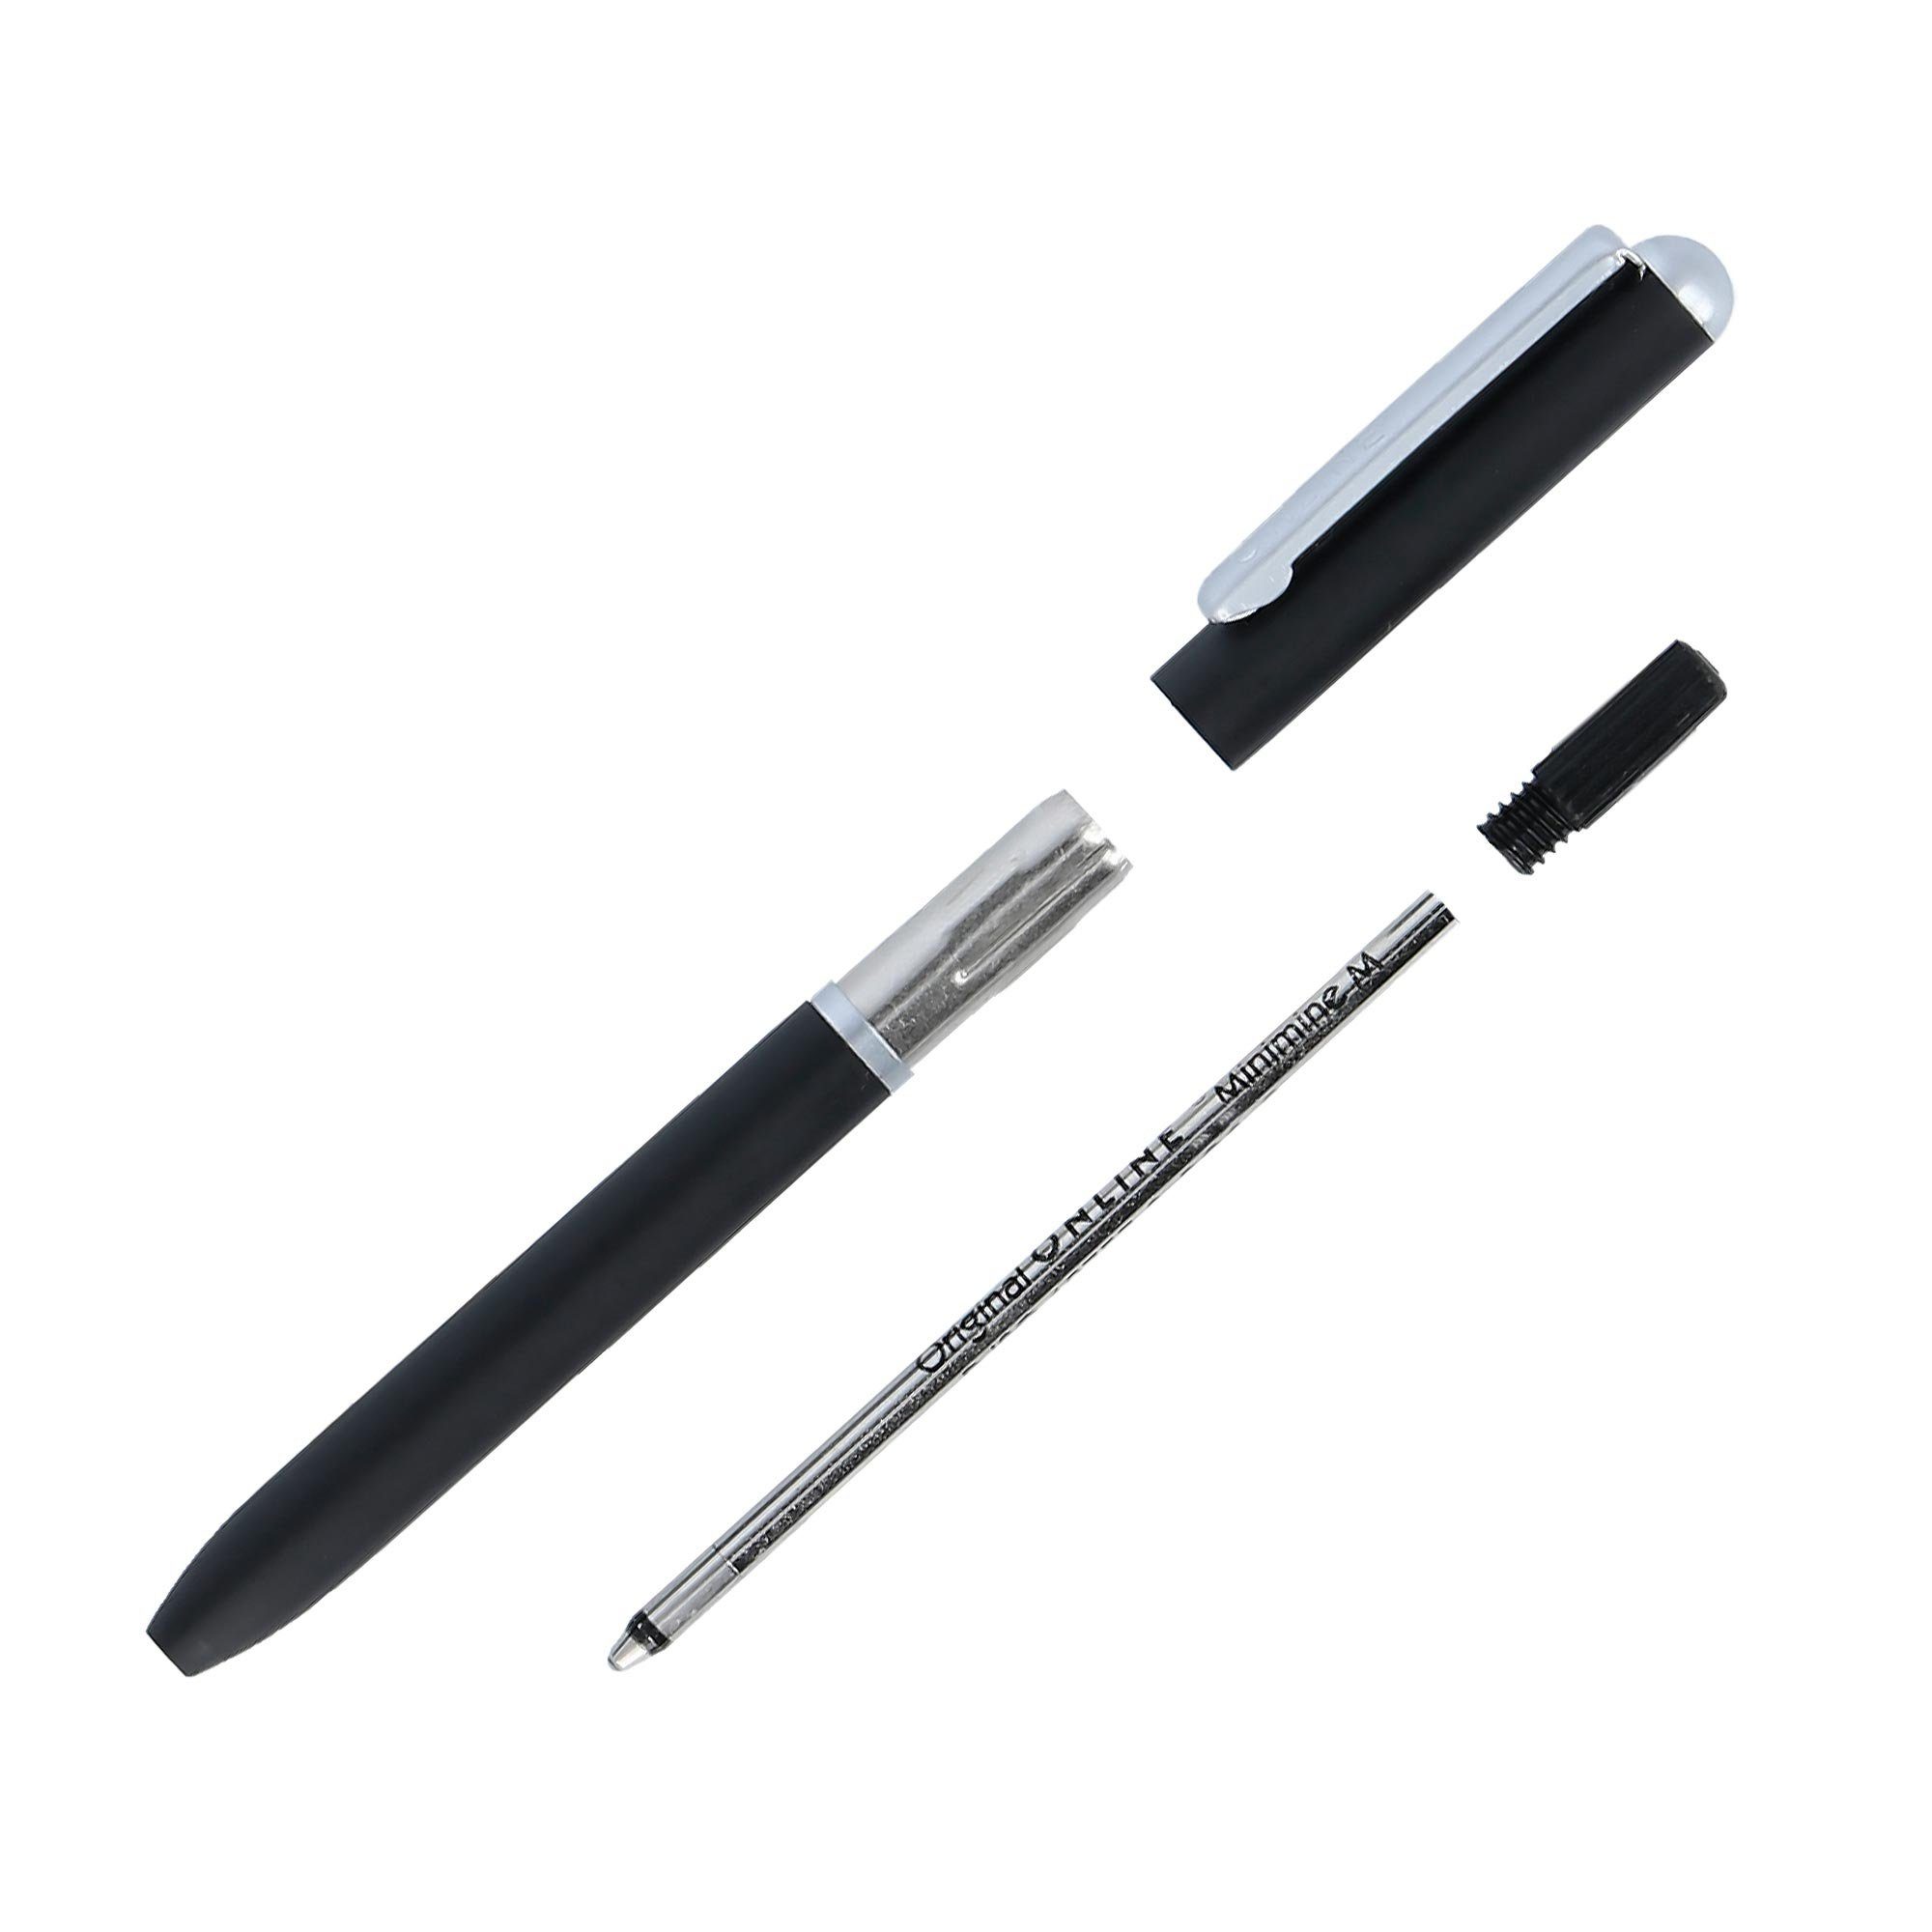 Online Pen Kugelschreiber Mini Standard D1-Qualitätsmine, Portemonnaie incl. Rosegold schwarzschreibend Drehkugelschreiber